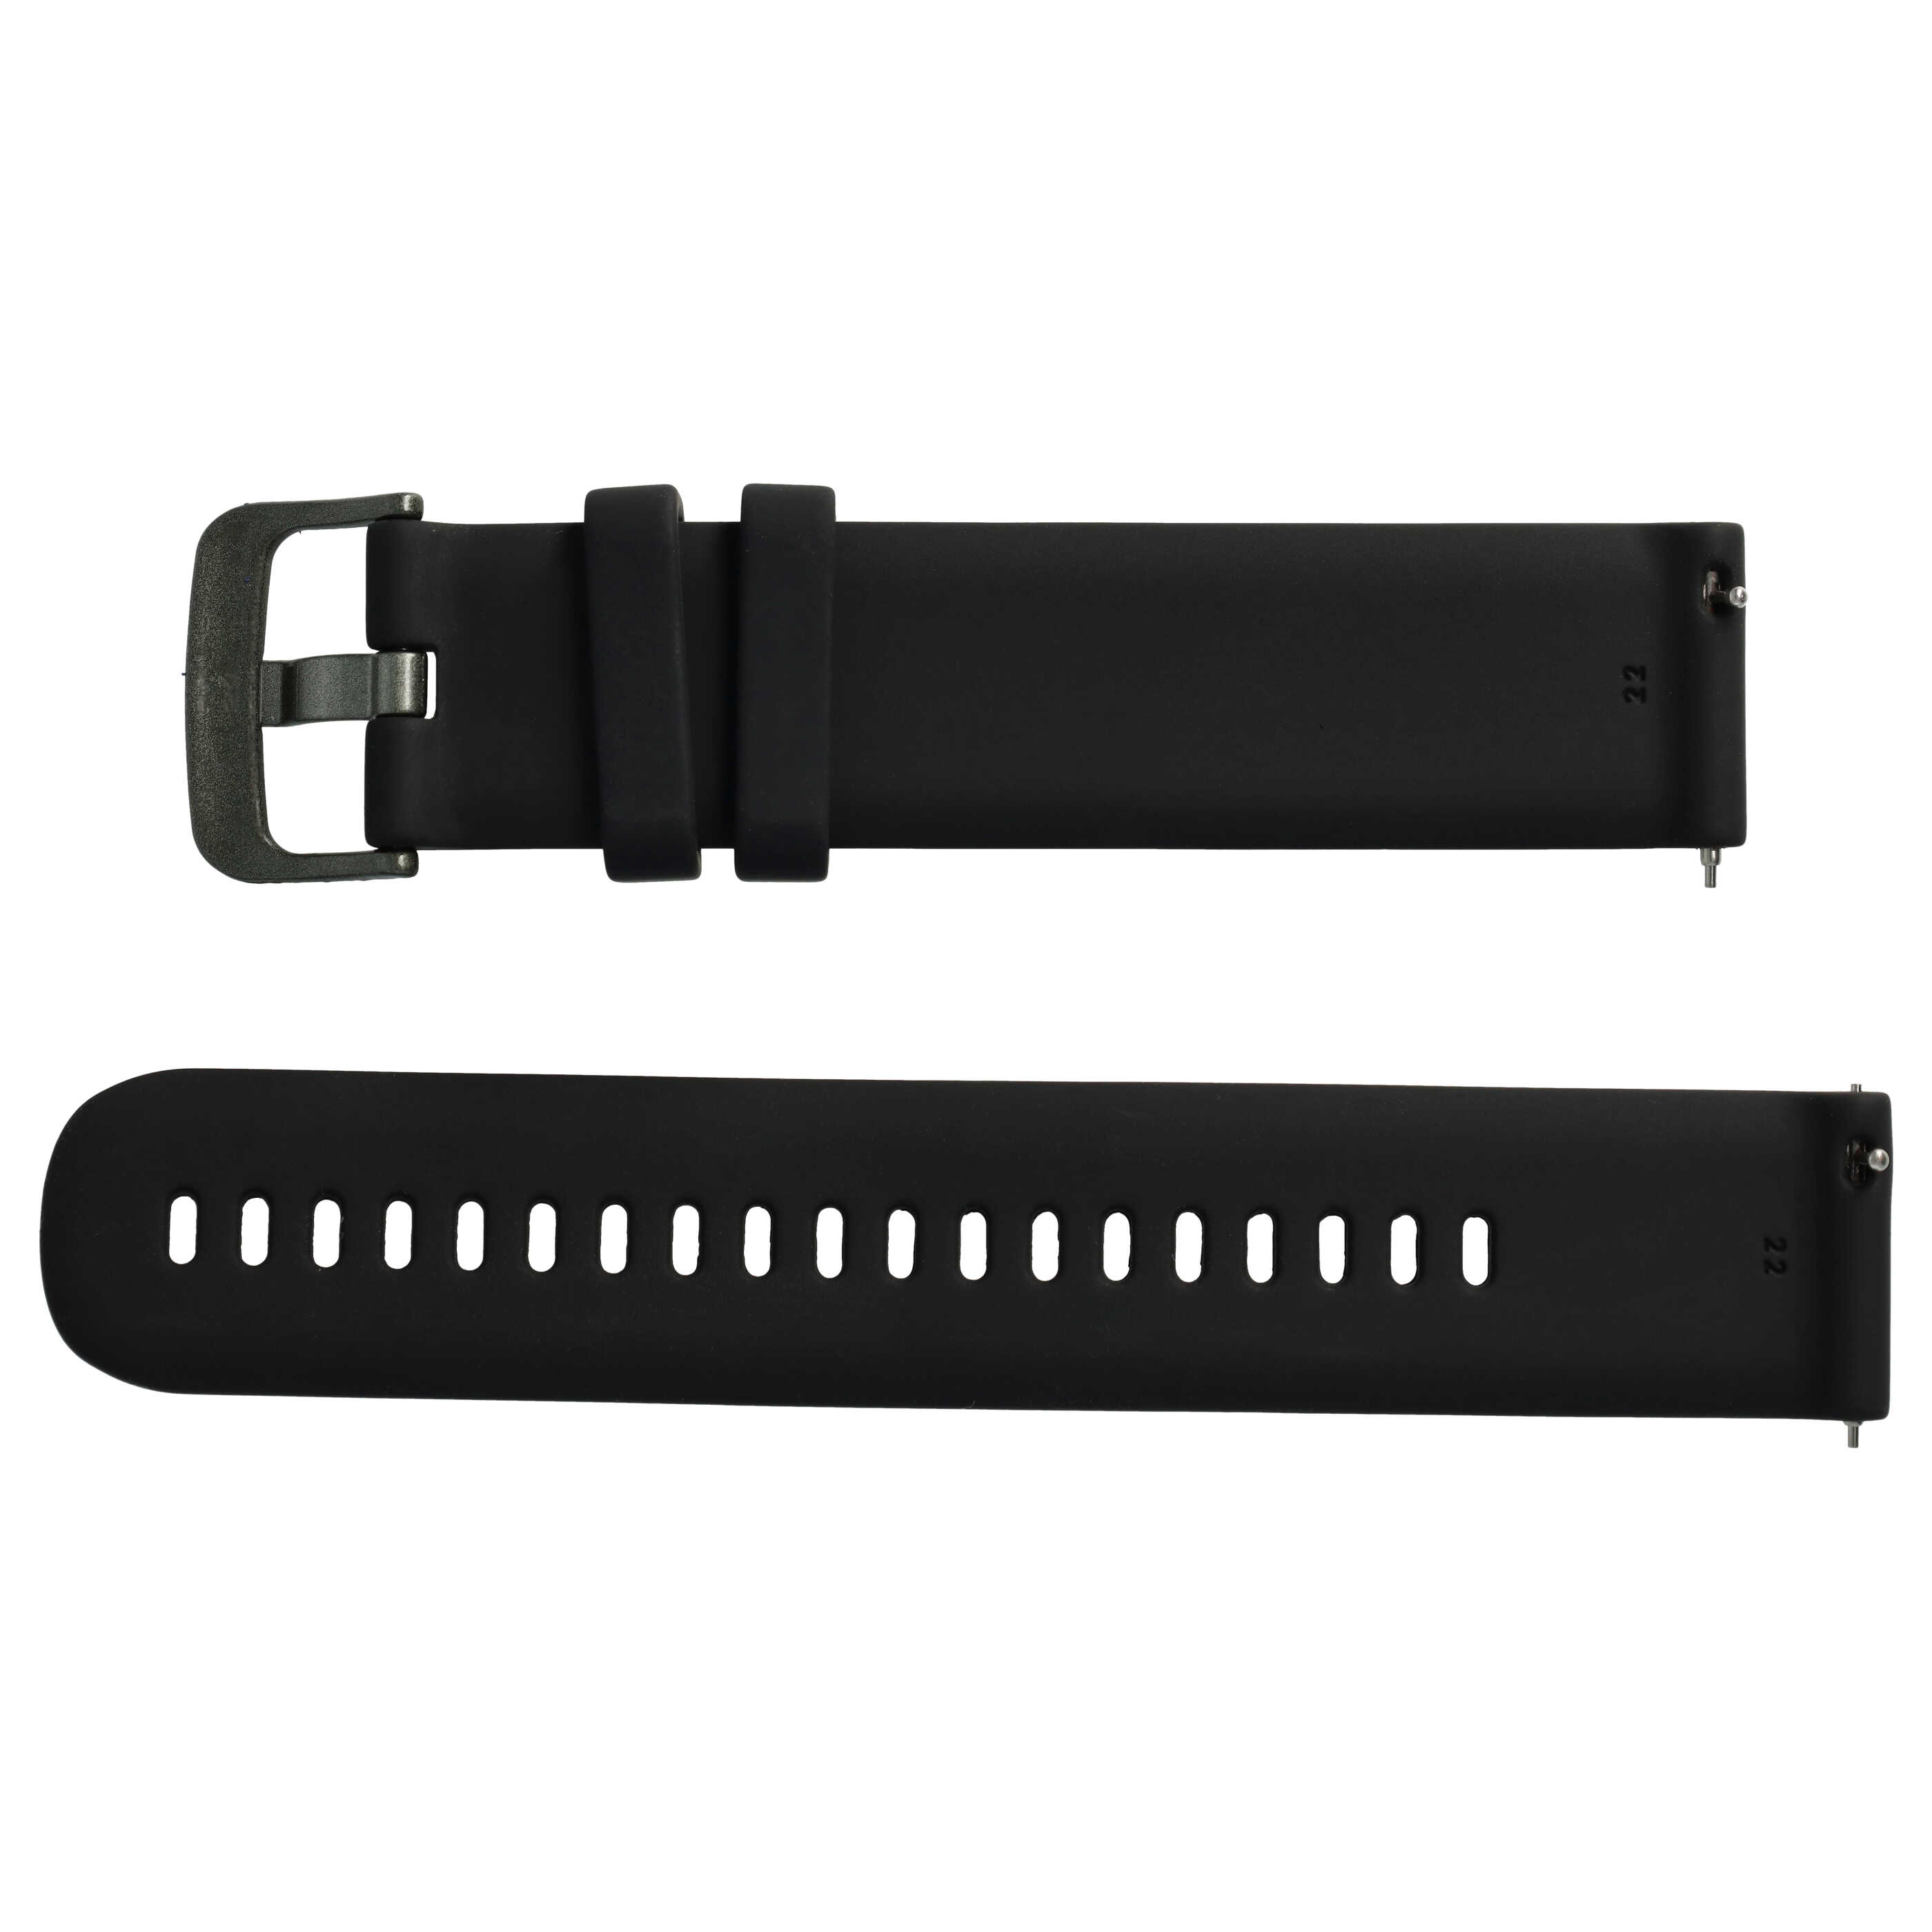 Pasek L do smartwatch Samsung Galaxy Watch - obwód nadgarstka do 270 mm , silikon, czarny